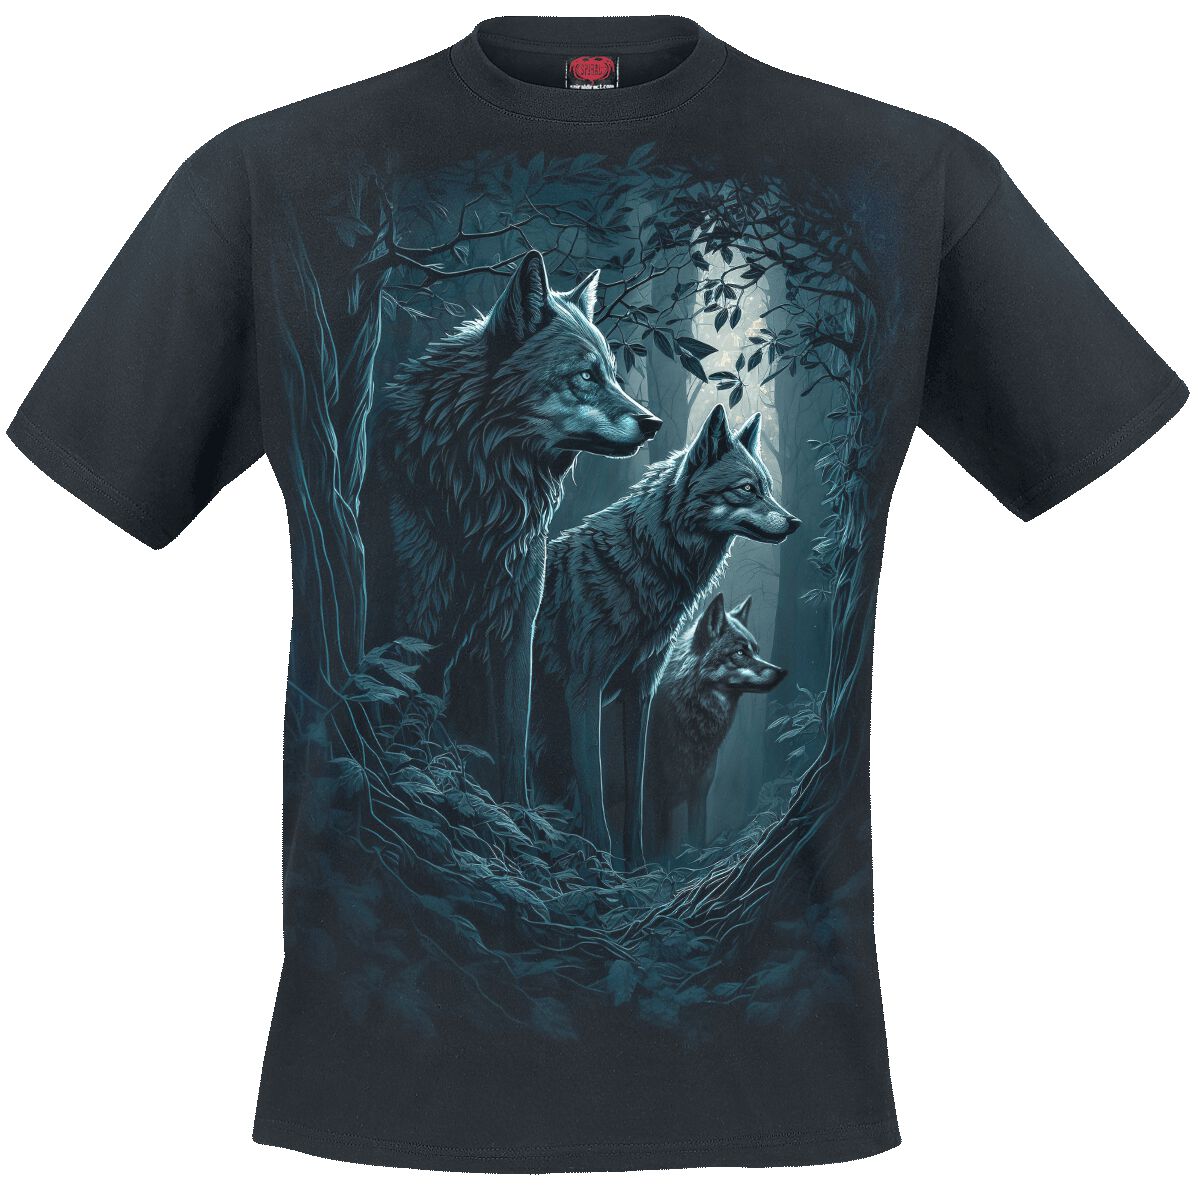 Spiral T-Shirt - Forest Guardians - S bis 4XL - für Männer - Größe S - schwarz